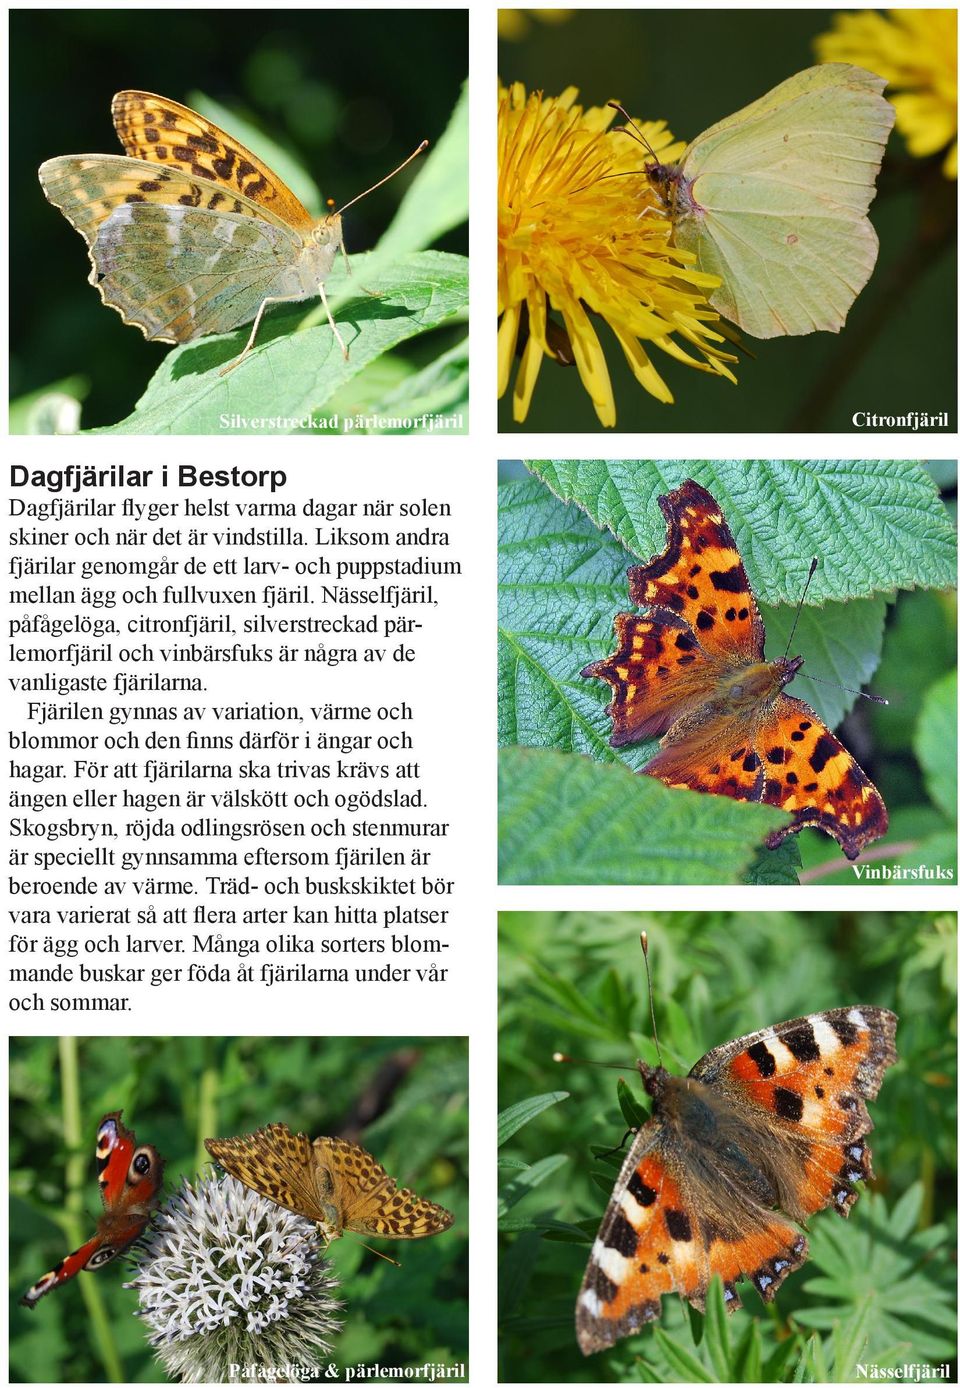 Nässelfjäril, påfågelöga, citronfjäril, silverstreckad pärlemorfjäril och vinbärsfuks är några av de vanligaste fjärilarna.